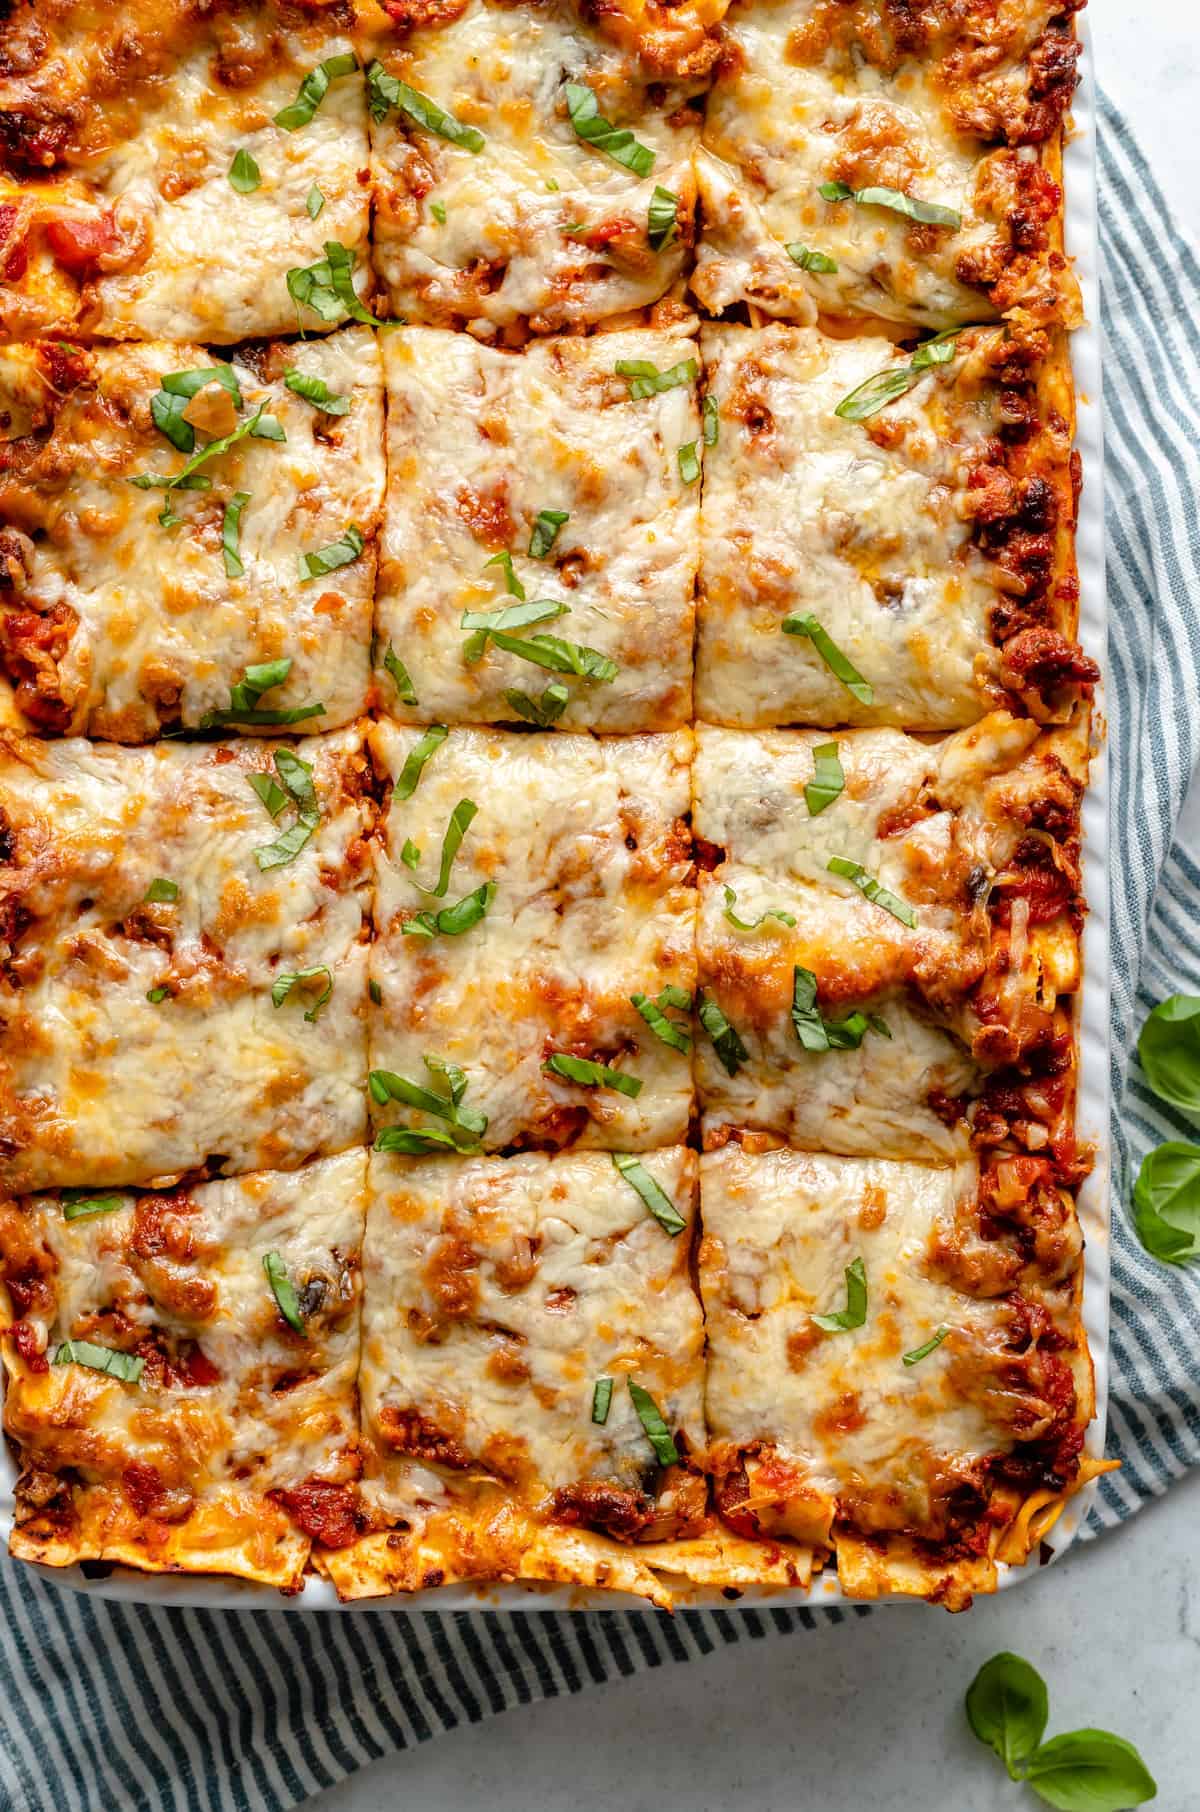 Vegan lasagna cut into squares.